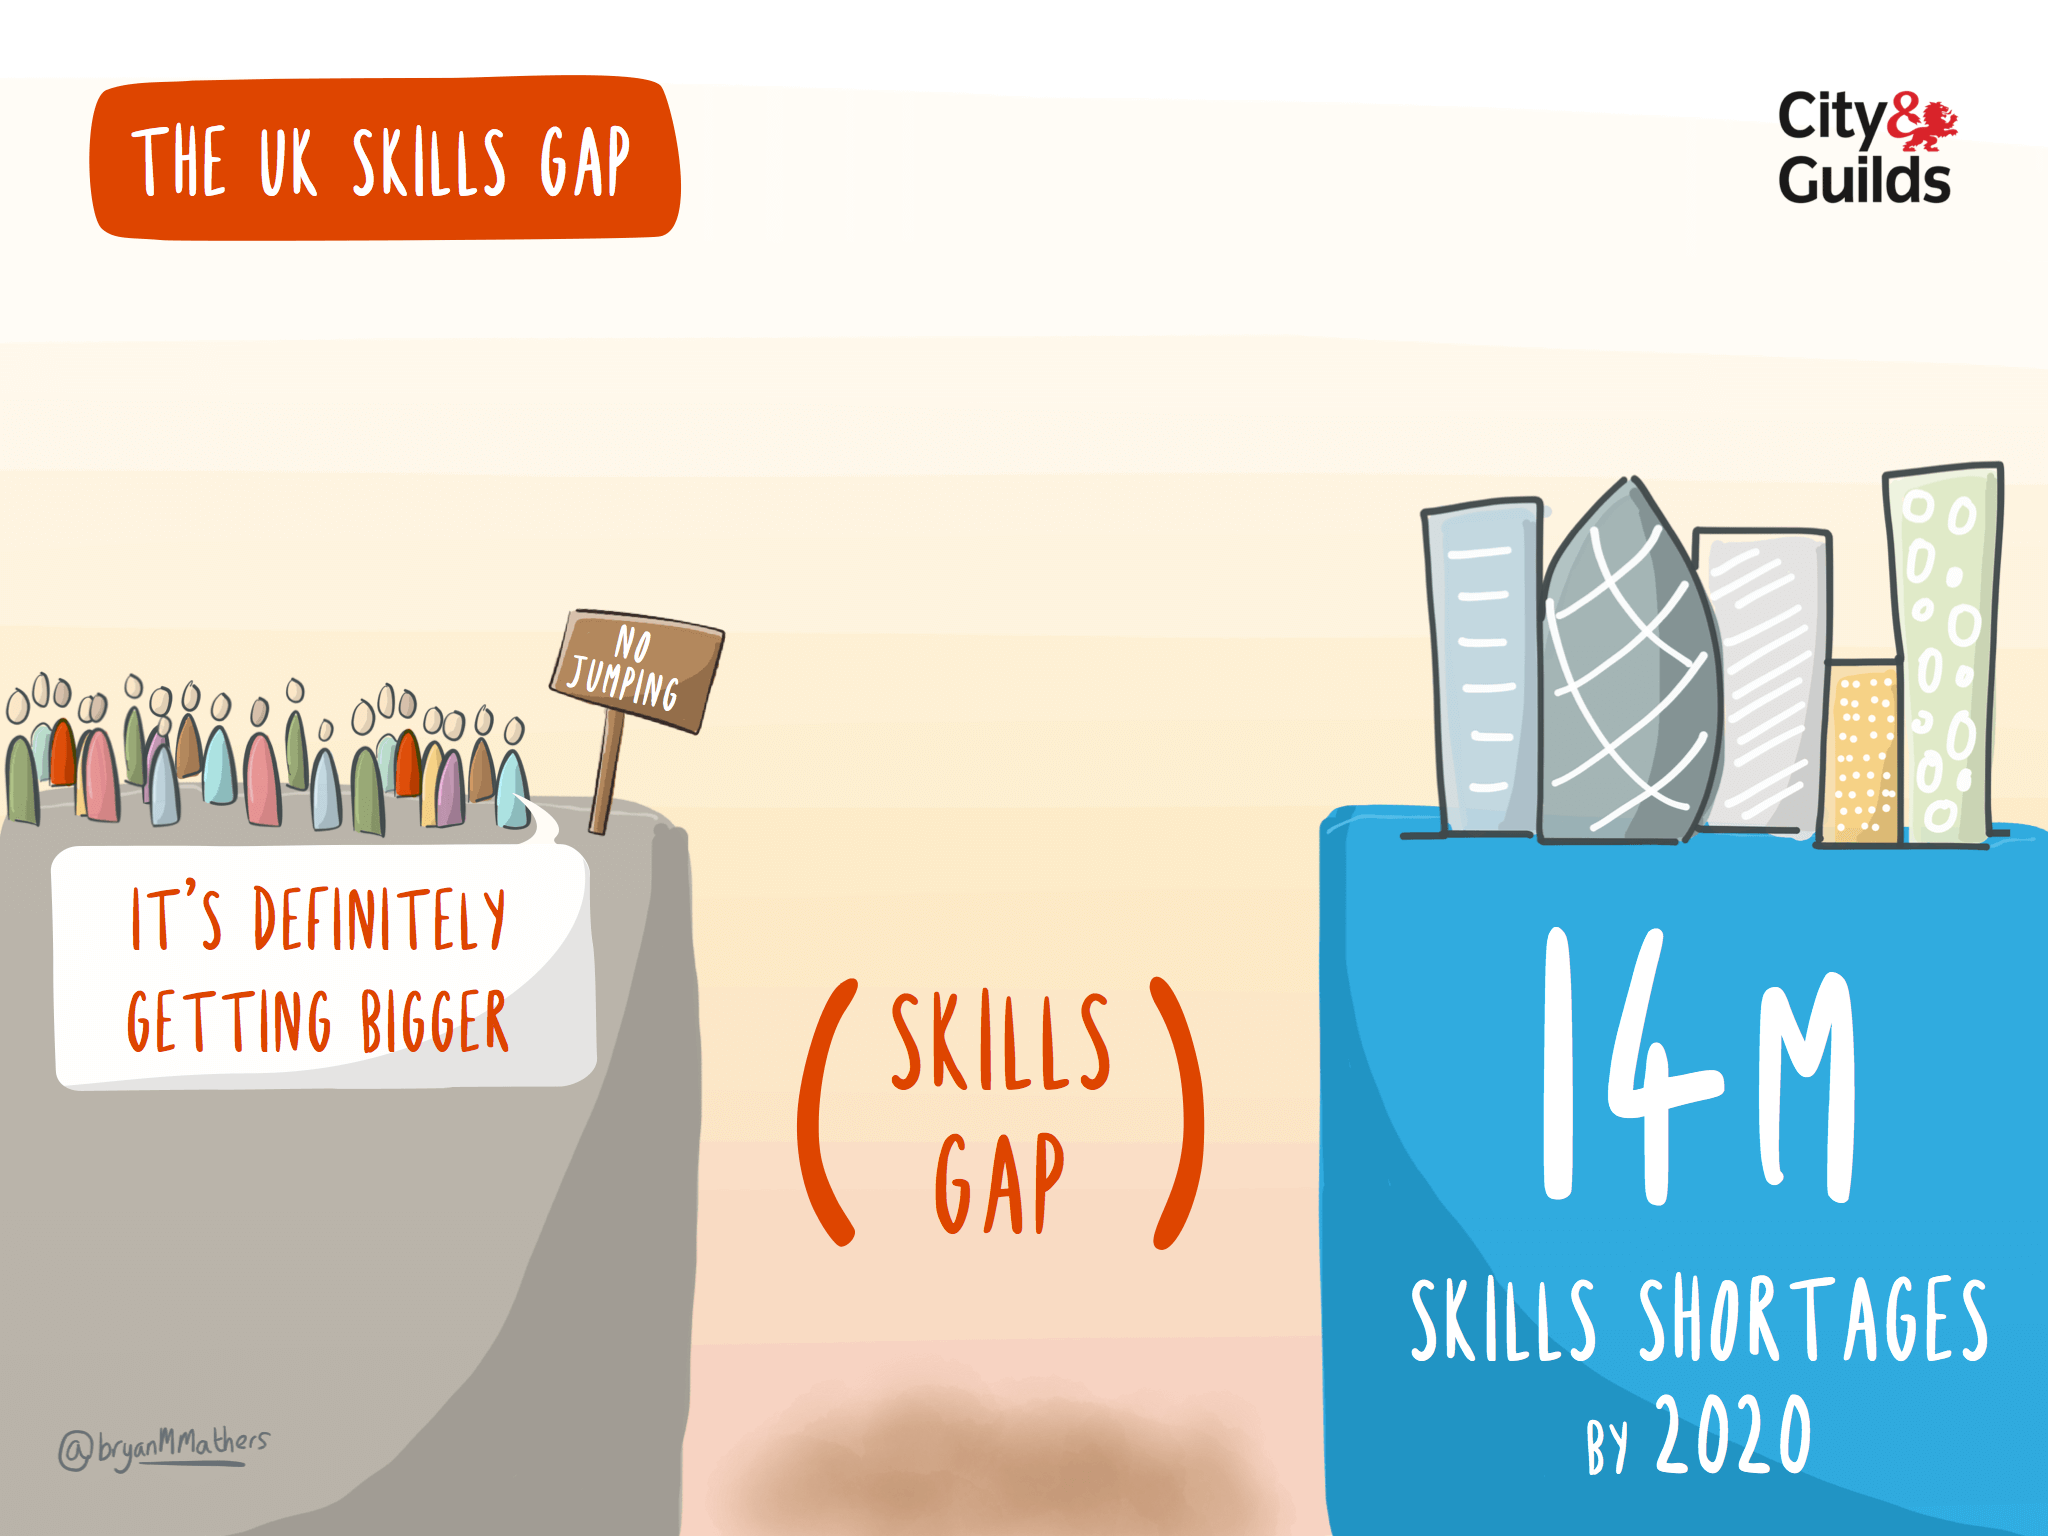 The UK skills gap